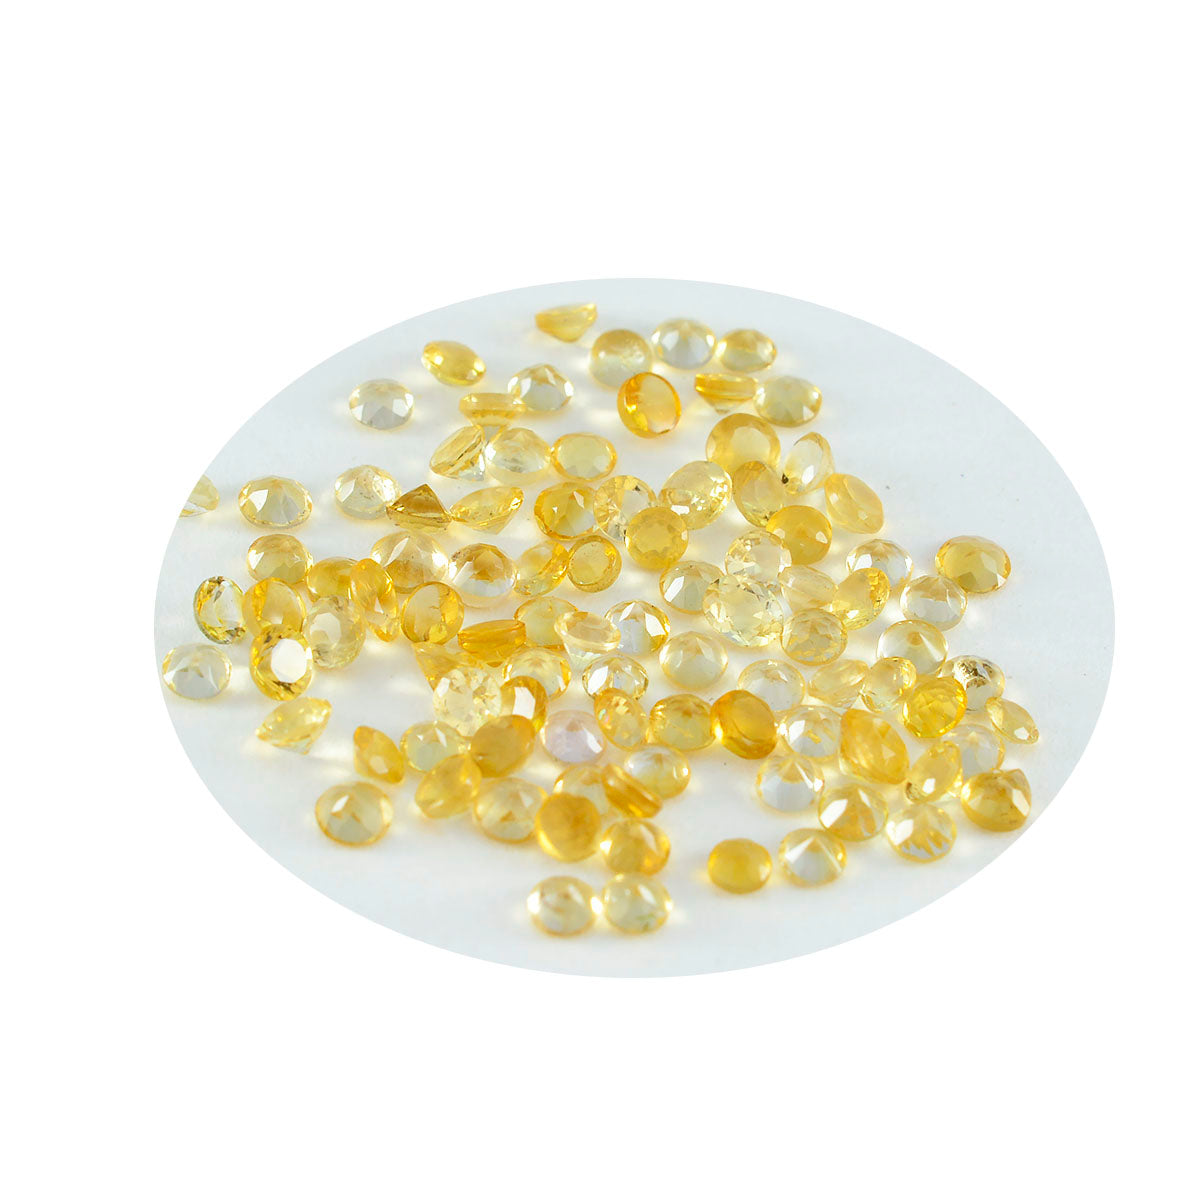 riyogems 1шт настоящий желтый цитрин ограненный 2x2 мм круглая форма превосходное качество россыпь драгоценных камней